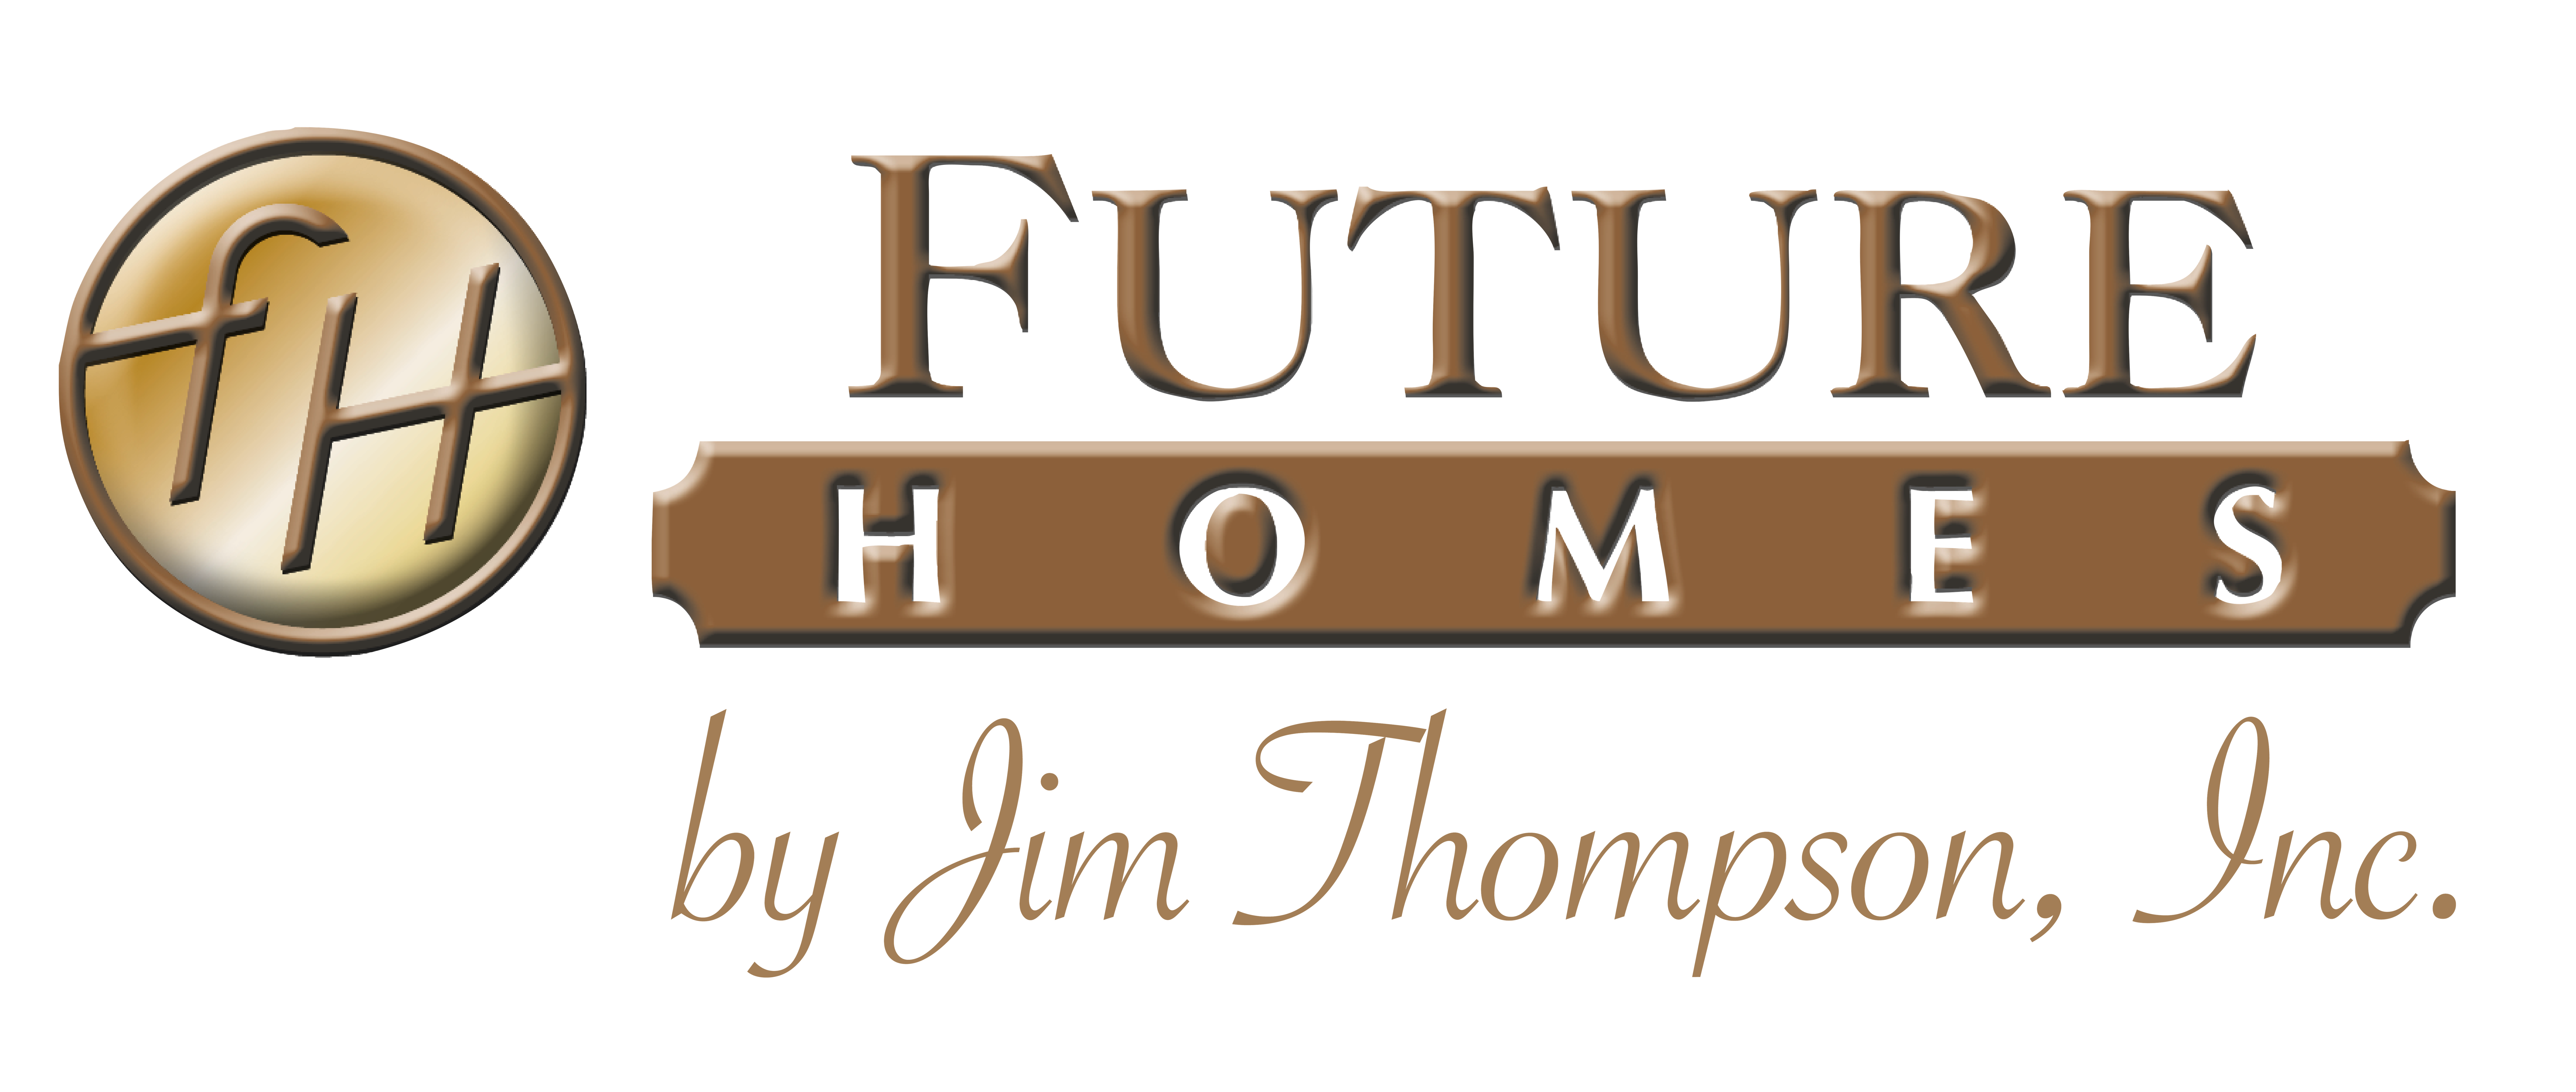 Sponsor Future Homes by Jim Thompson, Inc